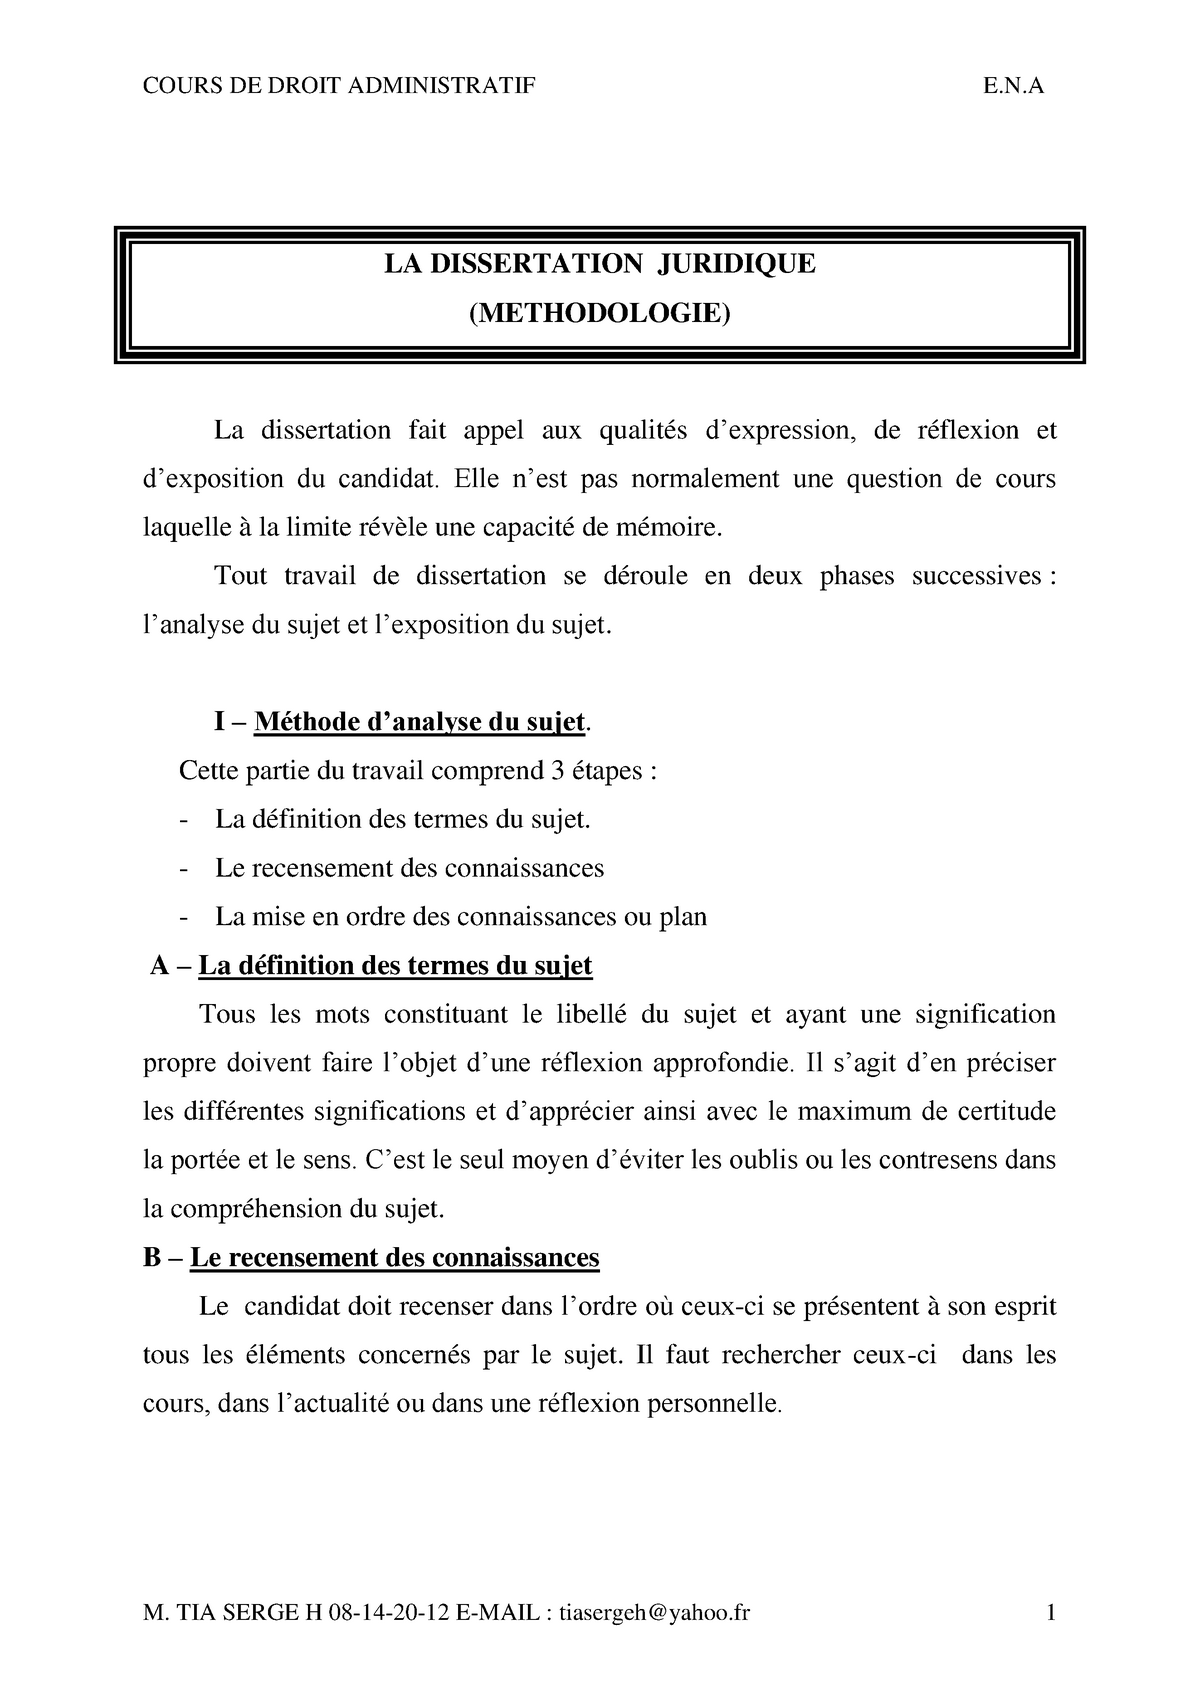 methodologie de la dissertation francaise en pdf